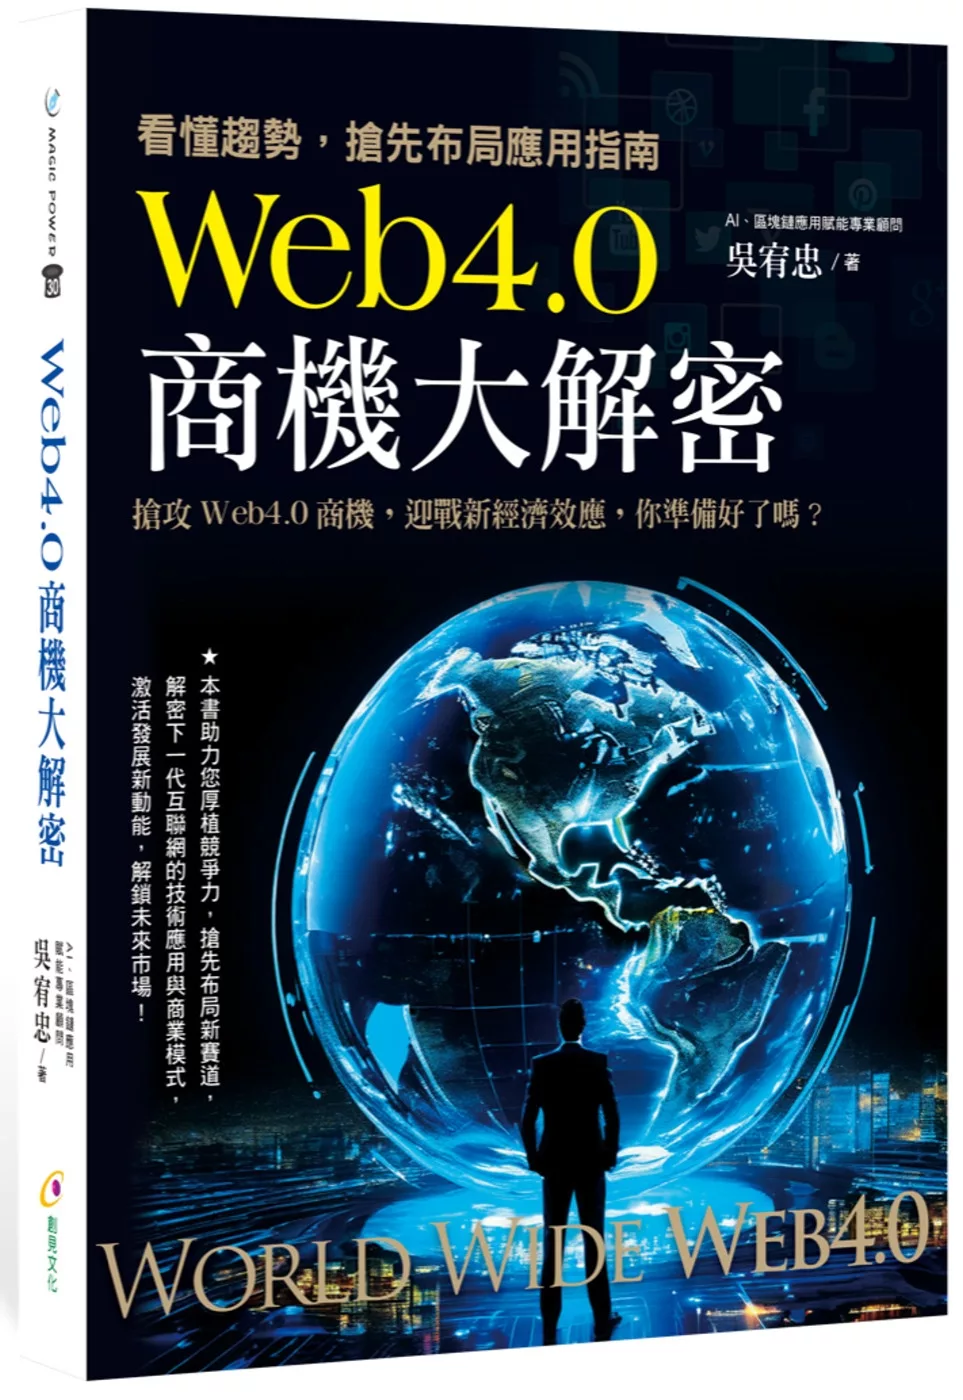 Web4.0商機大解密：看懂趨勢,搶先布局應用指南